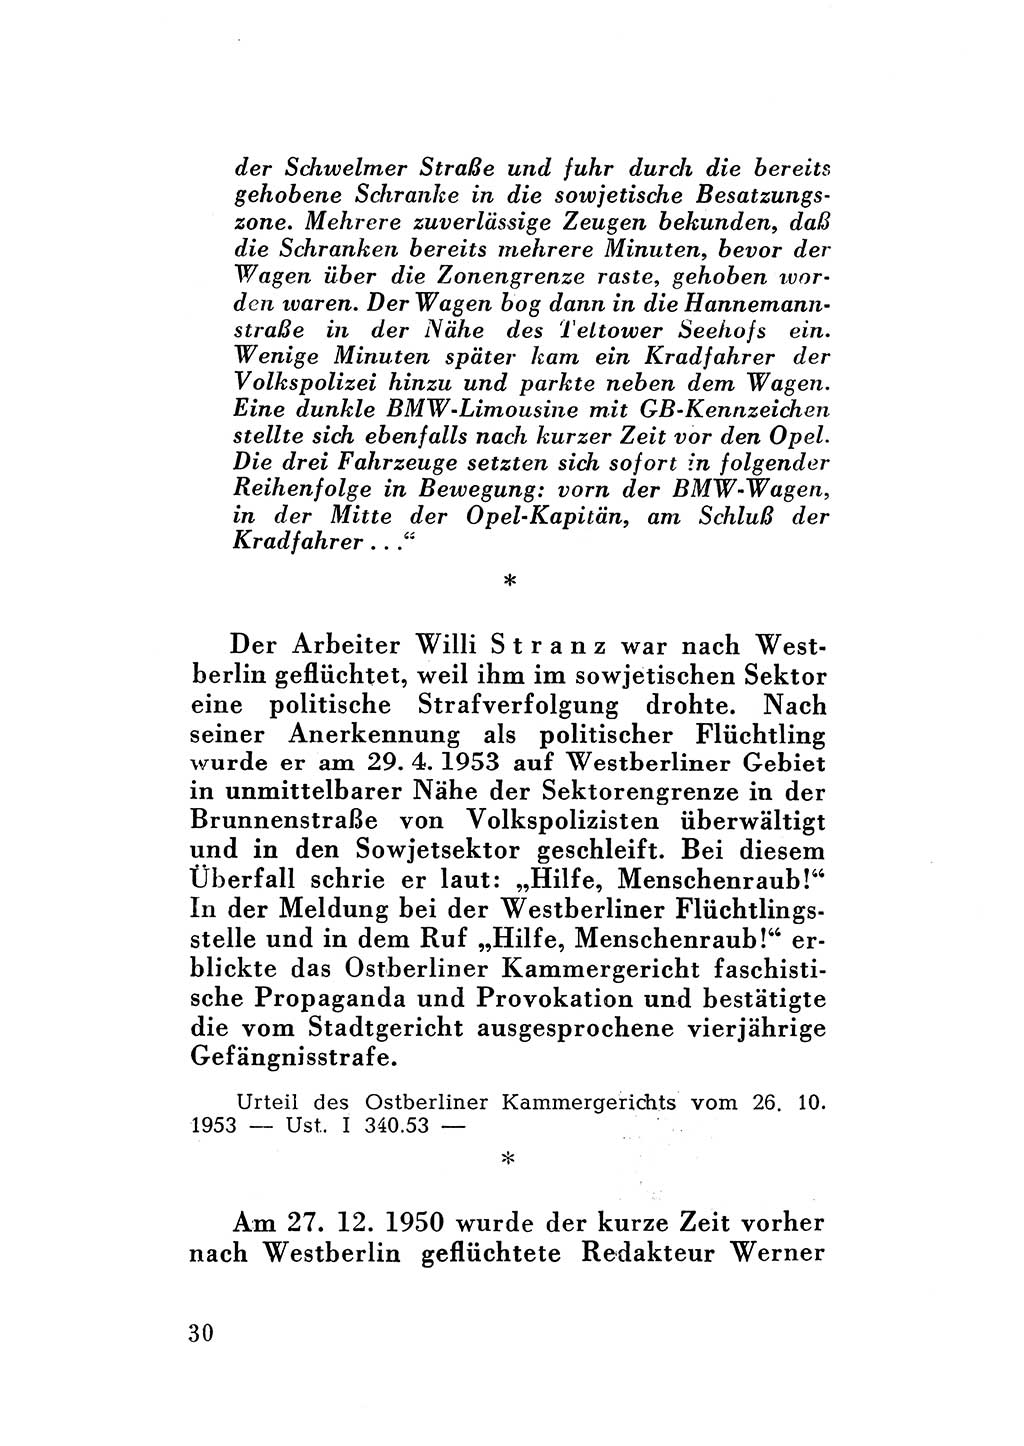 Katalog des Unrechts, Untersuchungsausschuß Freiheitlicher Juristen (UfJ) [Bundesrepublik Deutschland (BRD)] 1956, Seite 30 (Kat. UnR. UfJ BRD 1956, S. 30)